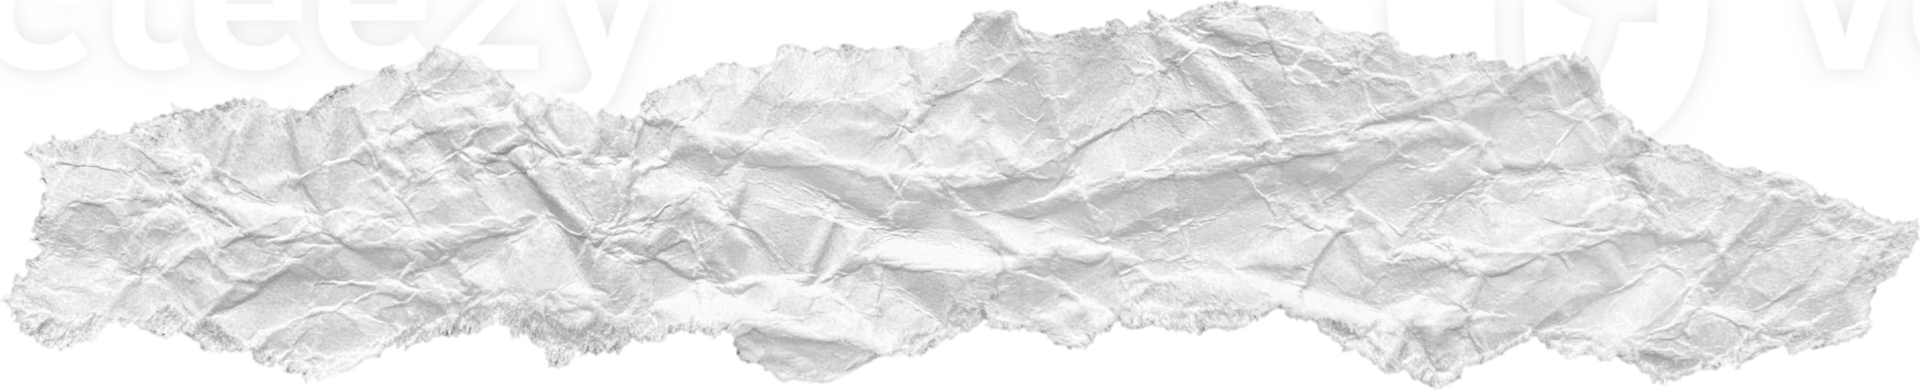 blanco rasgado estropeado papel pedazo png